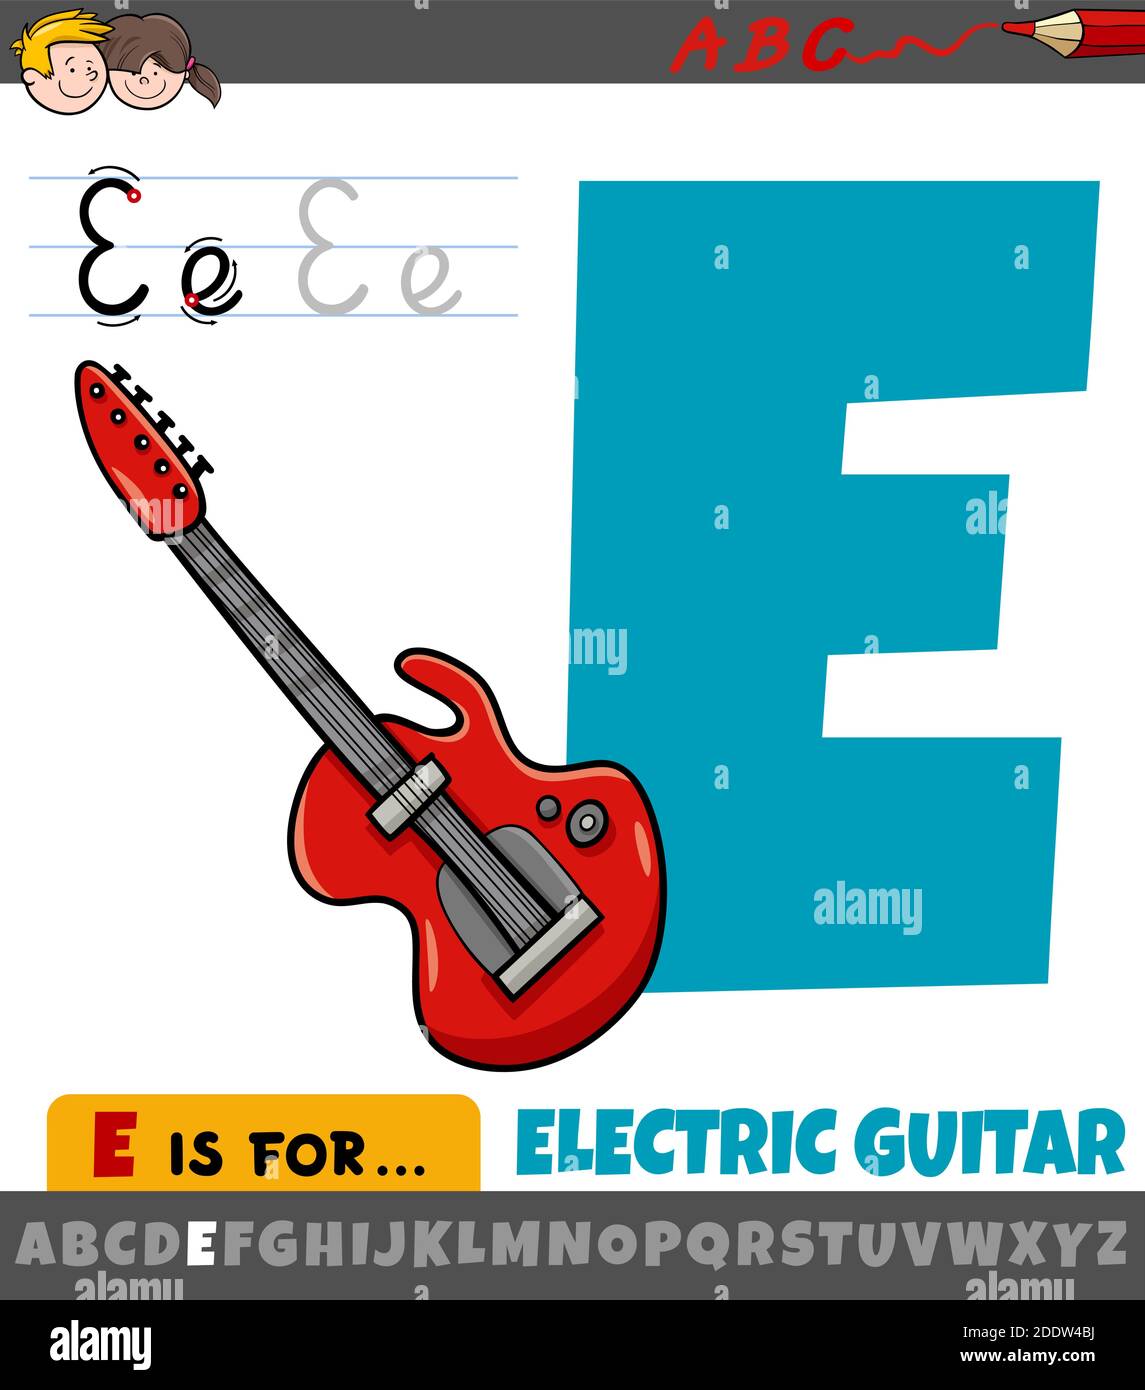 Electric guitar drawing immagini e fotografie stock ad alta risoluzione -  Pagina 2 - Alamy